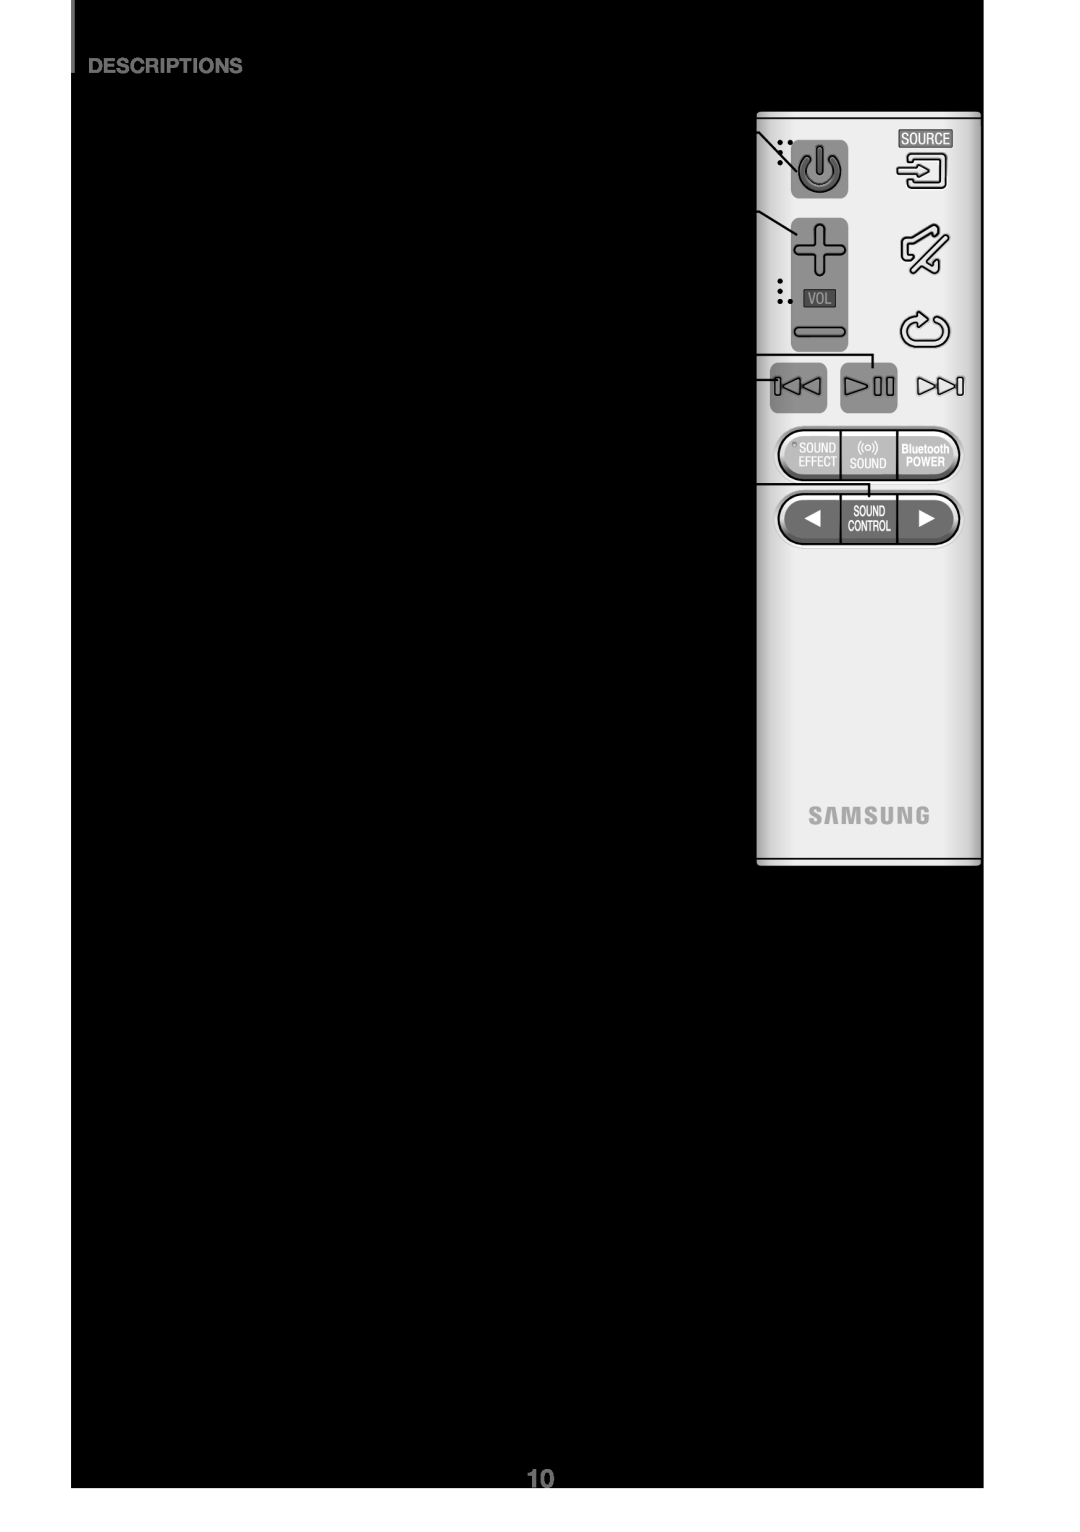 Samsung HW-J450/EN, HW-K450/EN, HW-J450/ZF, HW-K450/ZF manual Descriptions, Marche/Arrêt 